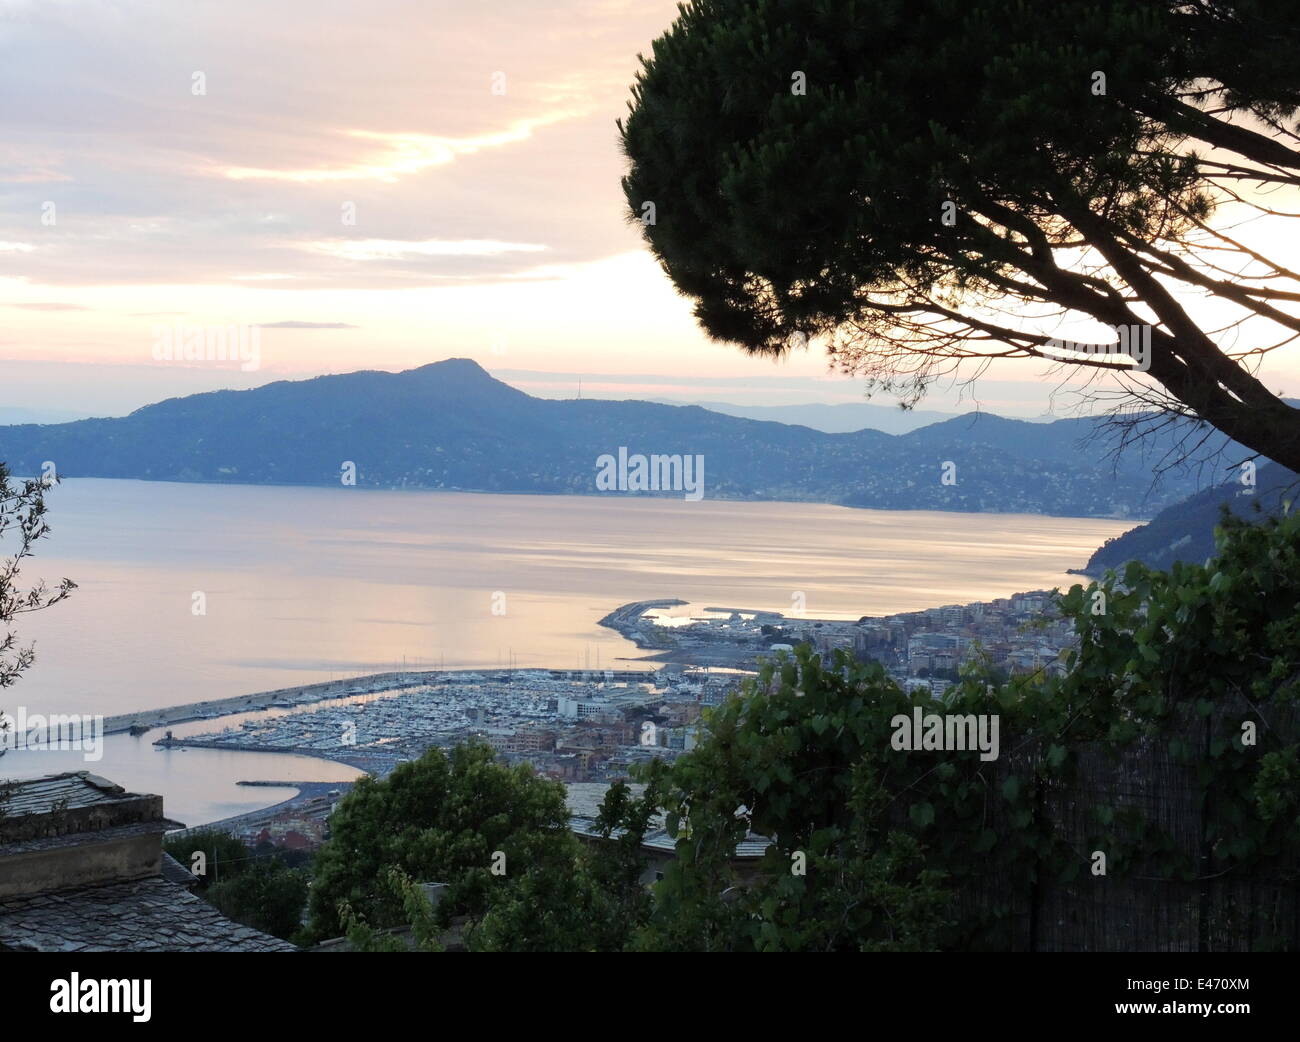 La vista della baia di Rapallo con la città ligure Lavagna e Chiavari, in  primo piano e il Monte de Portofino, in background Foto stock - Alamy